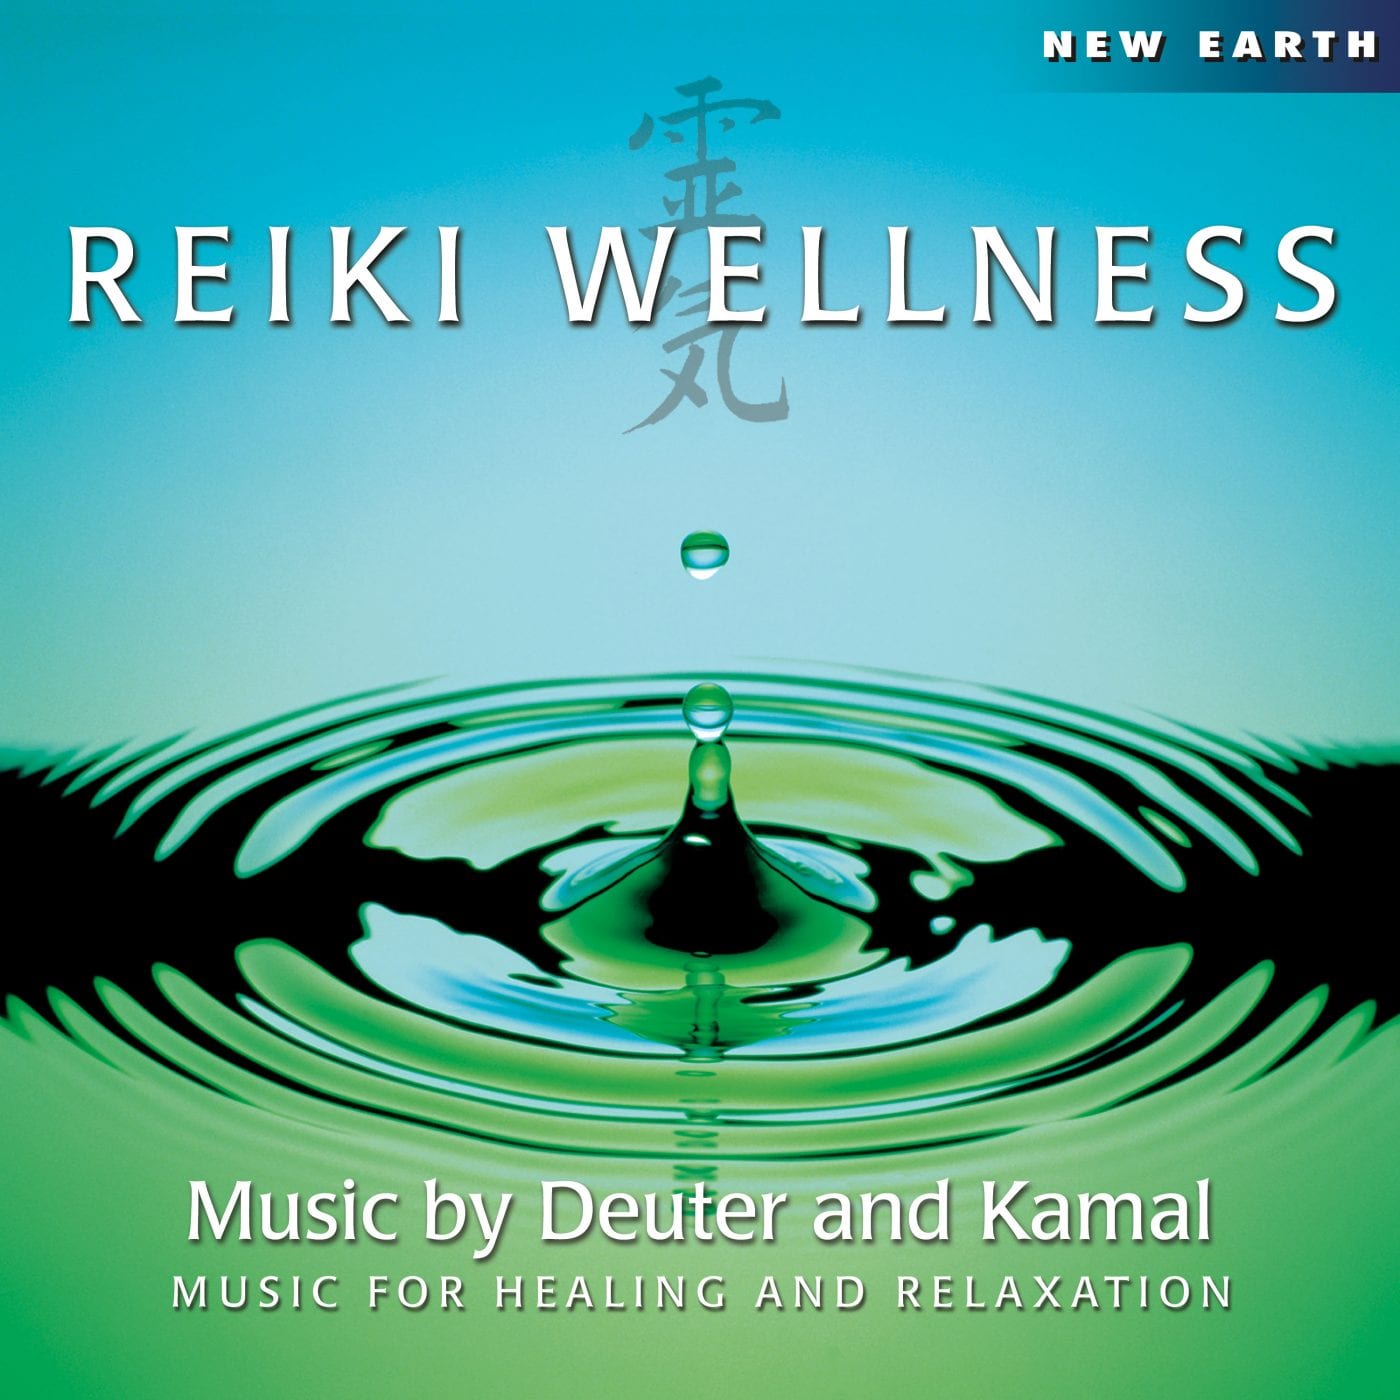 reiki wellness